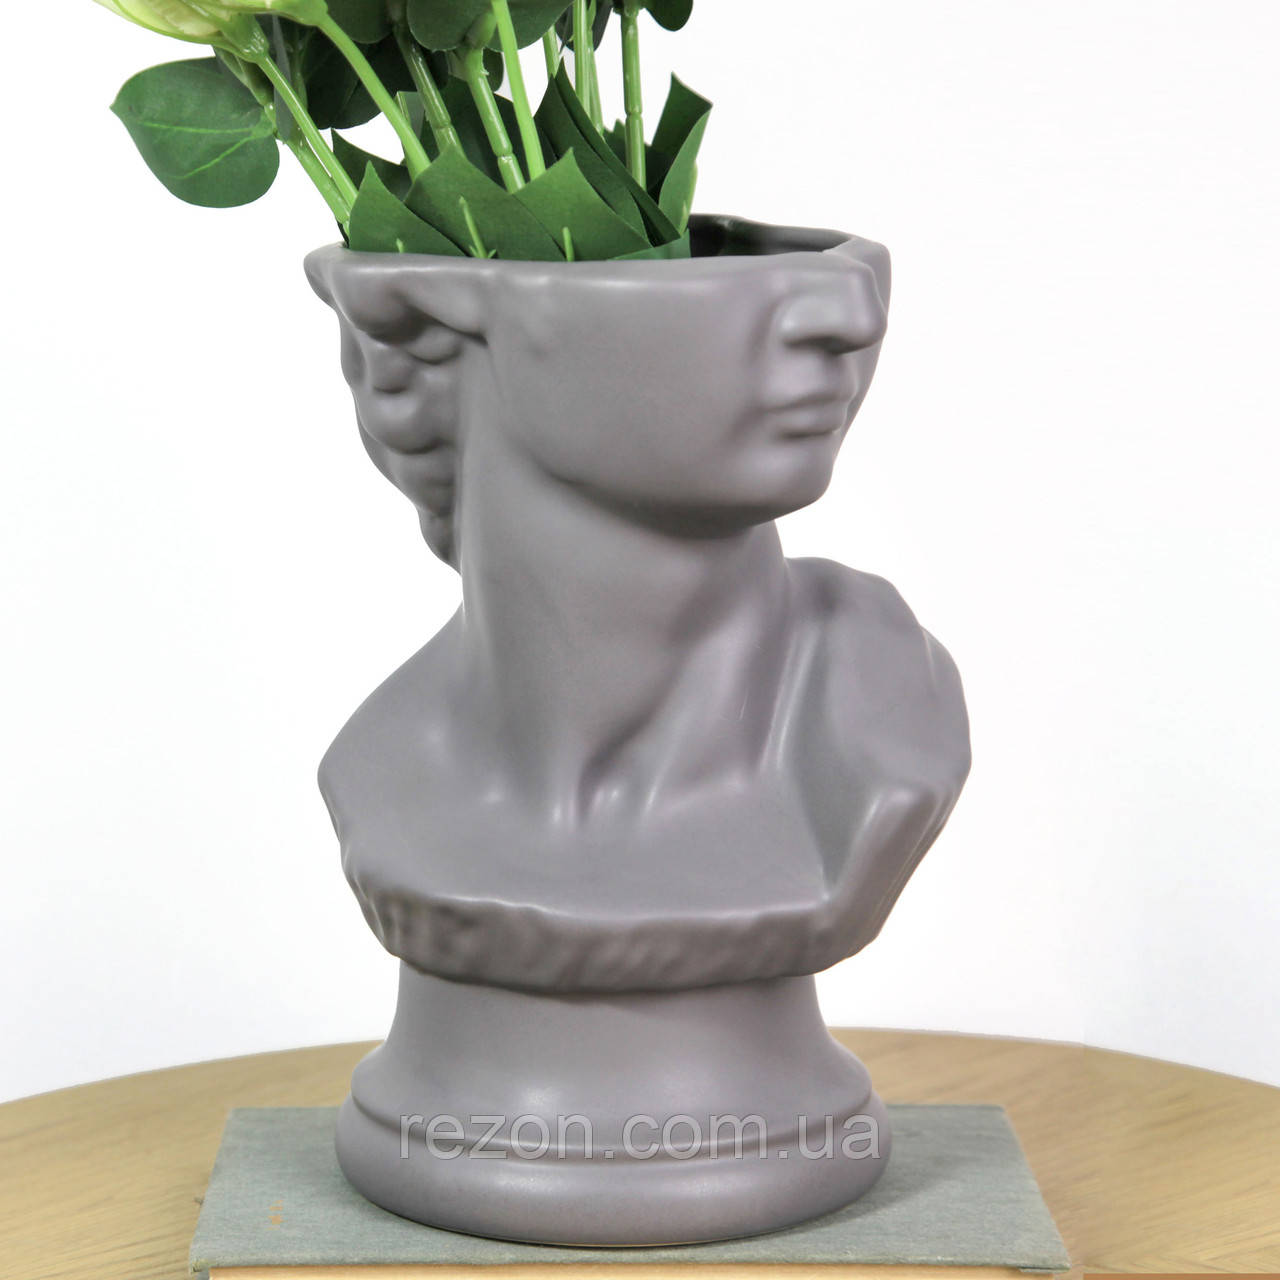 Ваза керамічна для квітів настільна 24 см "Давид" Сірий мат. Rezon V016